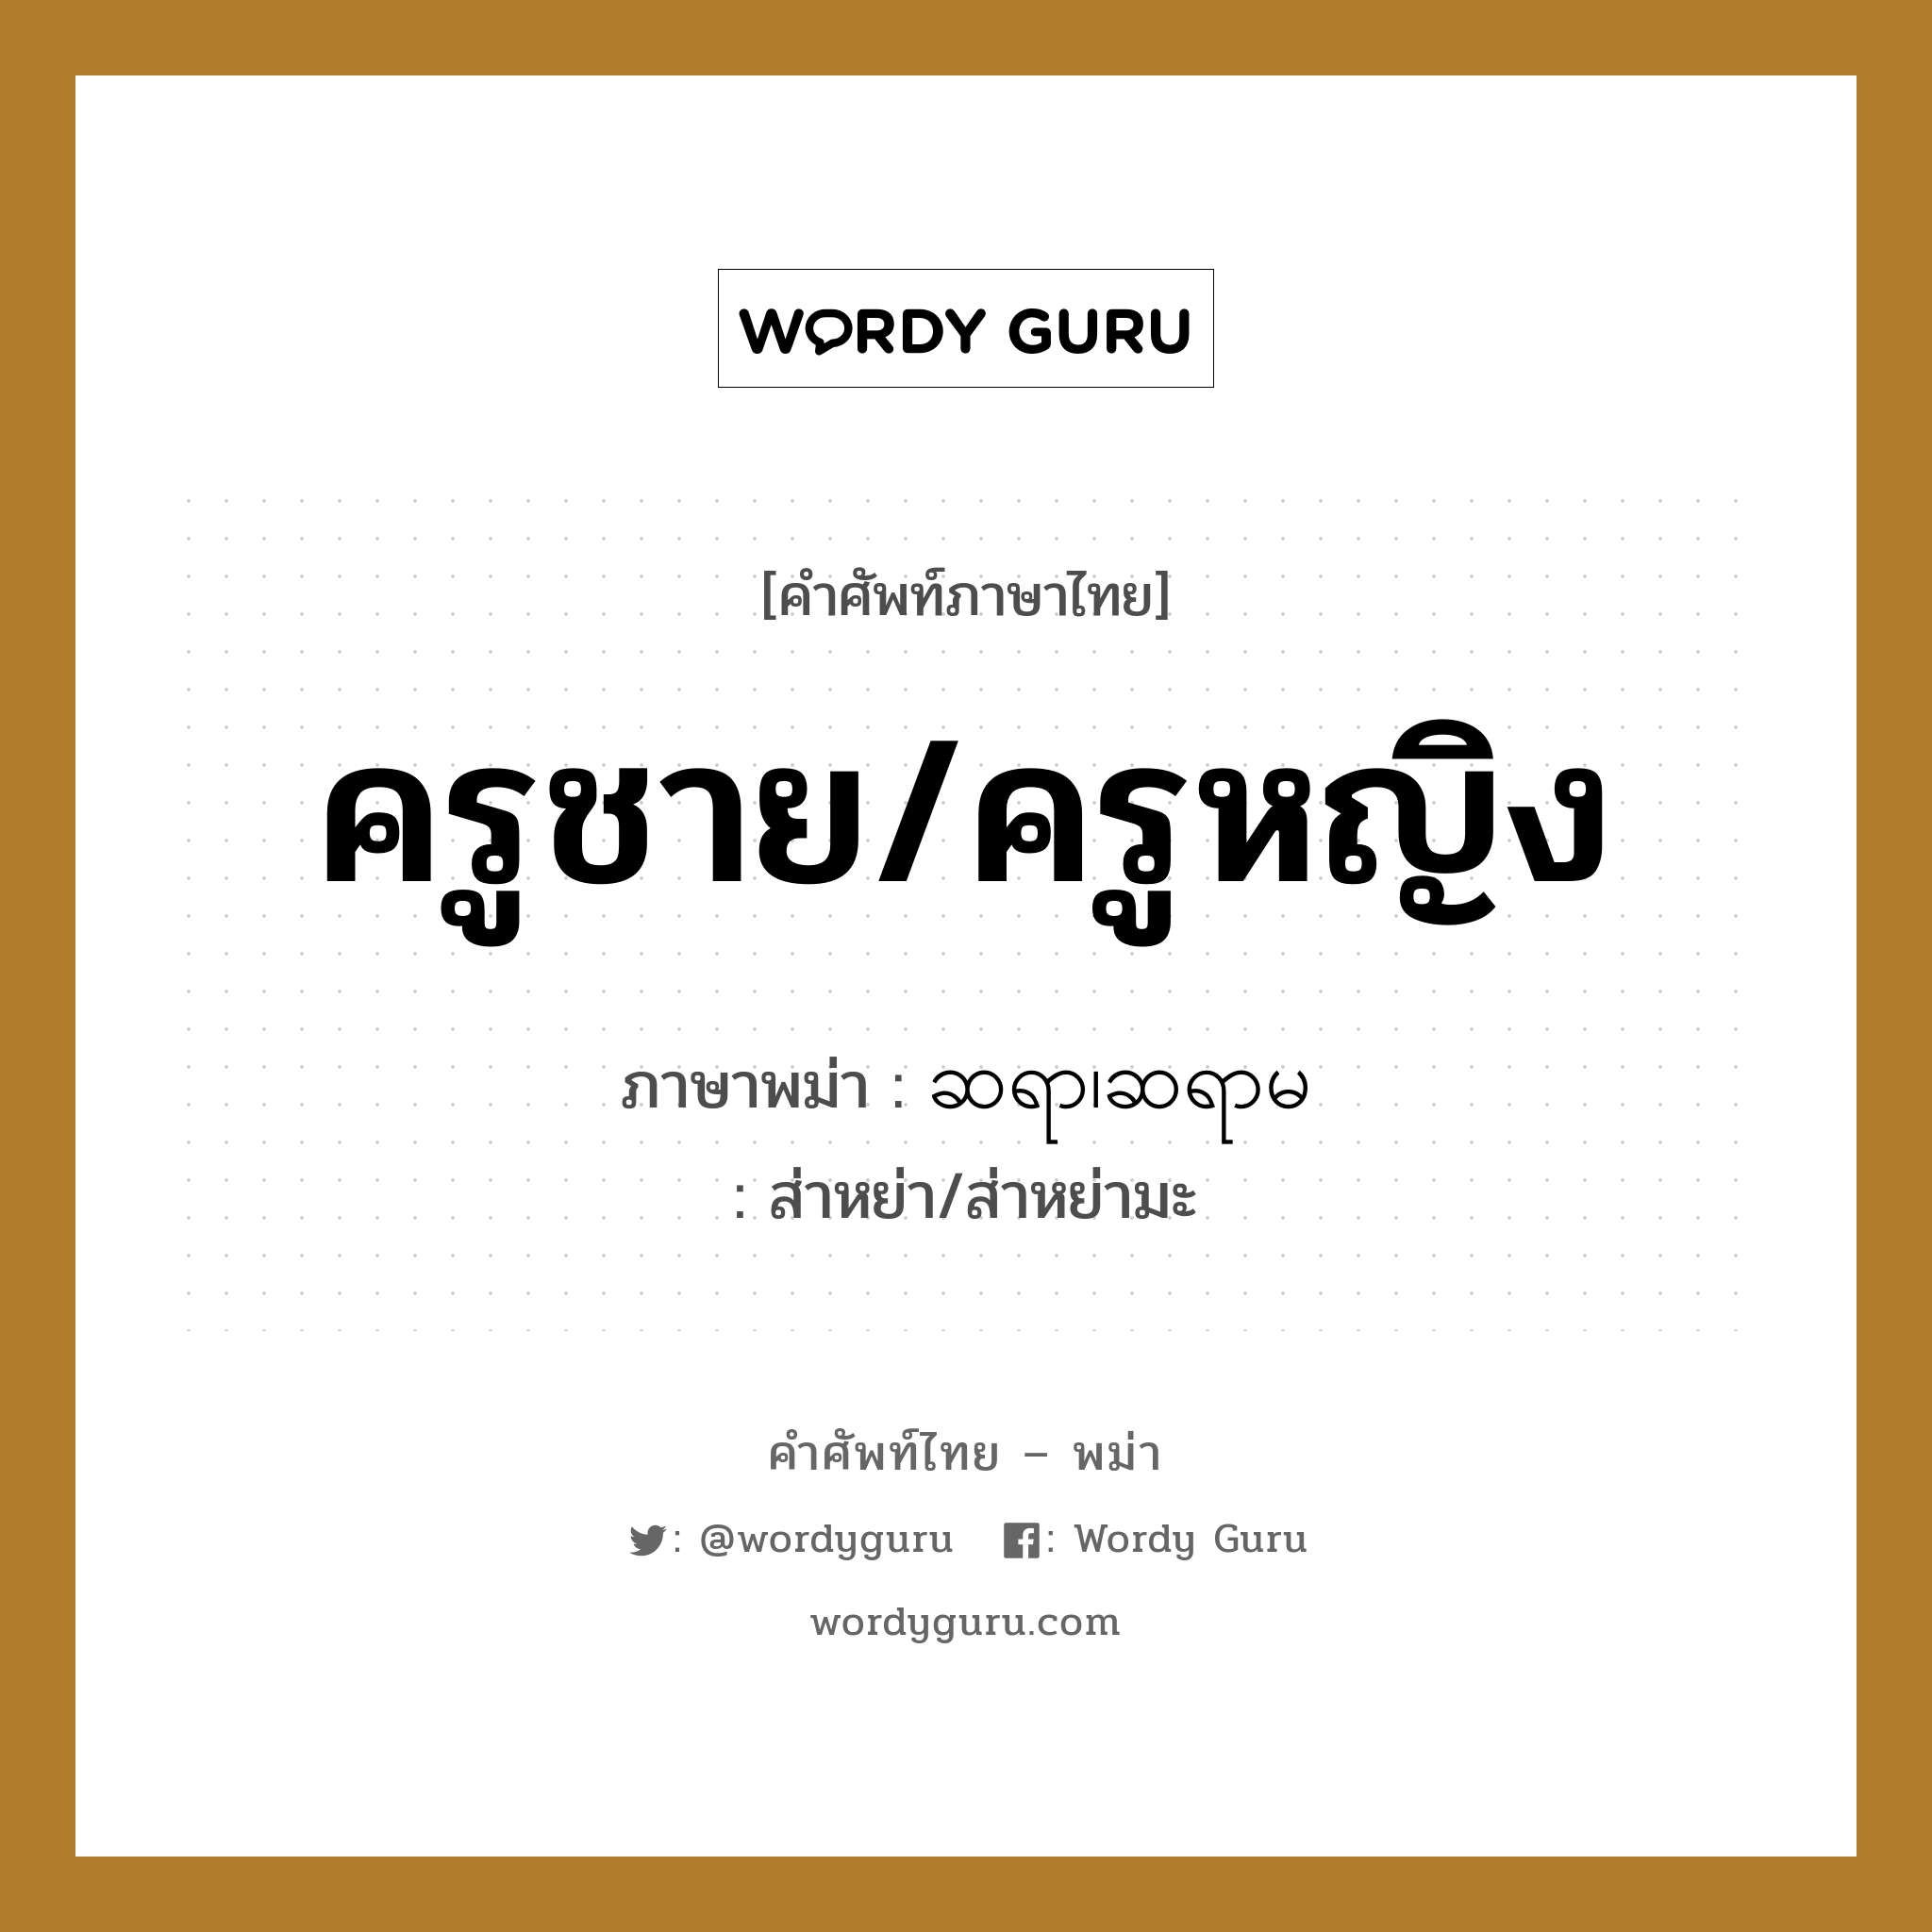 ครูชาย/ครูหญิง ภาษาพม่าคืออะไร, คำศัพท์ภาษาไทย - พม่า ครูชาย/ครูหญิง ภาษาพม่า ဆရာ၊ဆရာမ หมวด ทั่วไป ส่าหย่า/ส่าหย่ามะ หมวด ทั่วไป